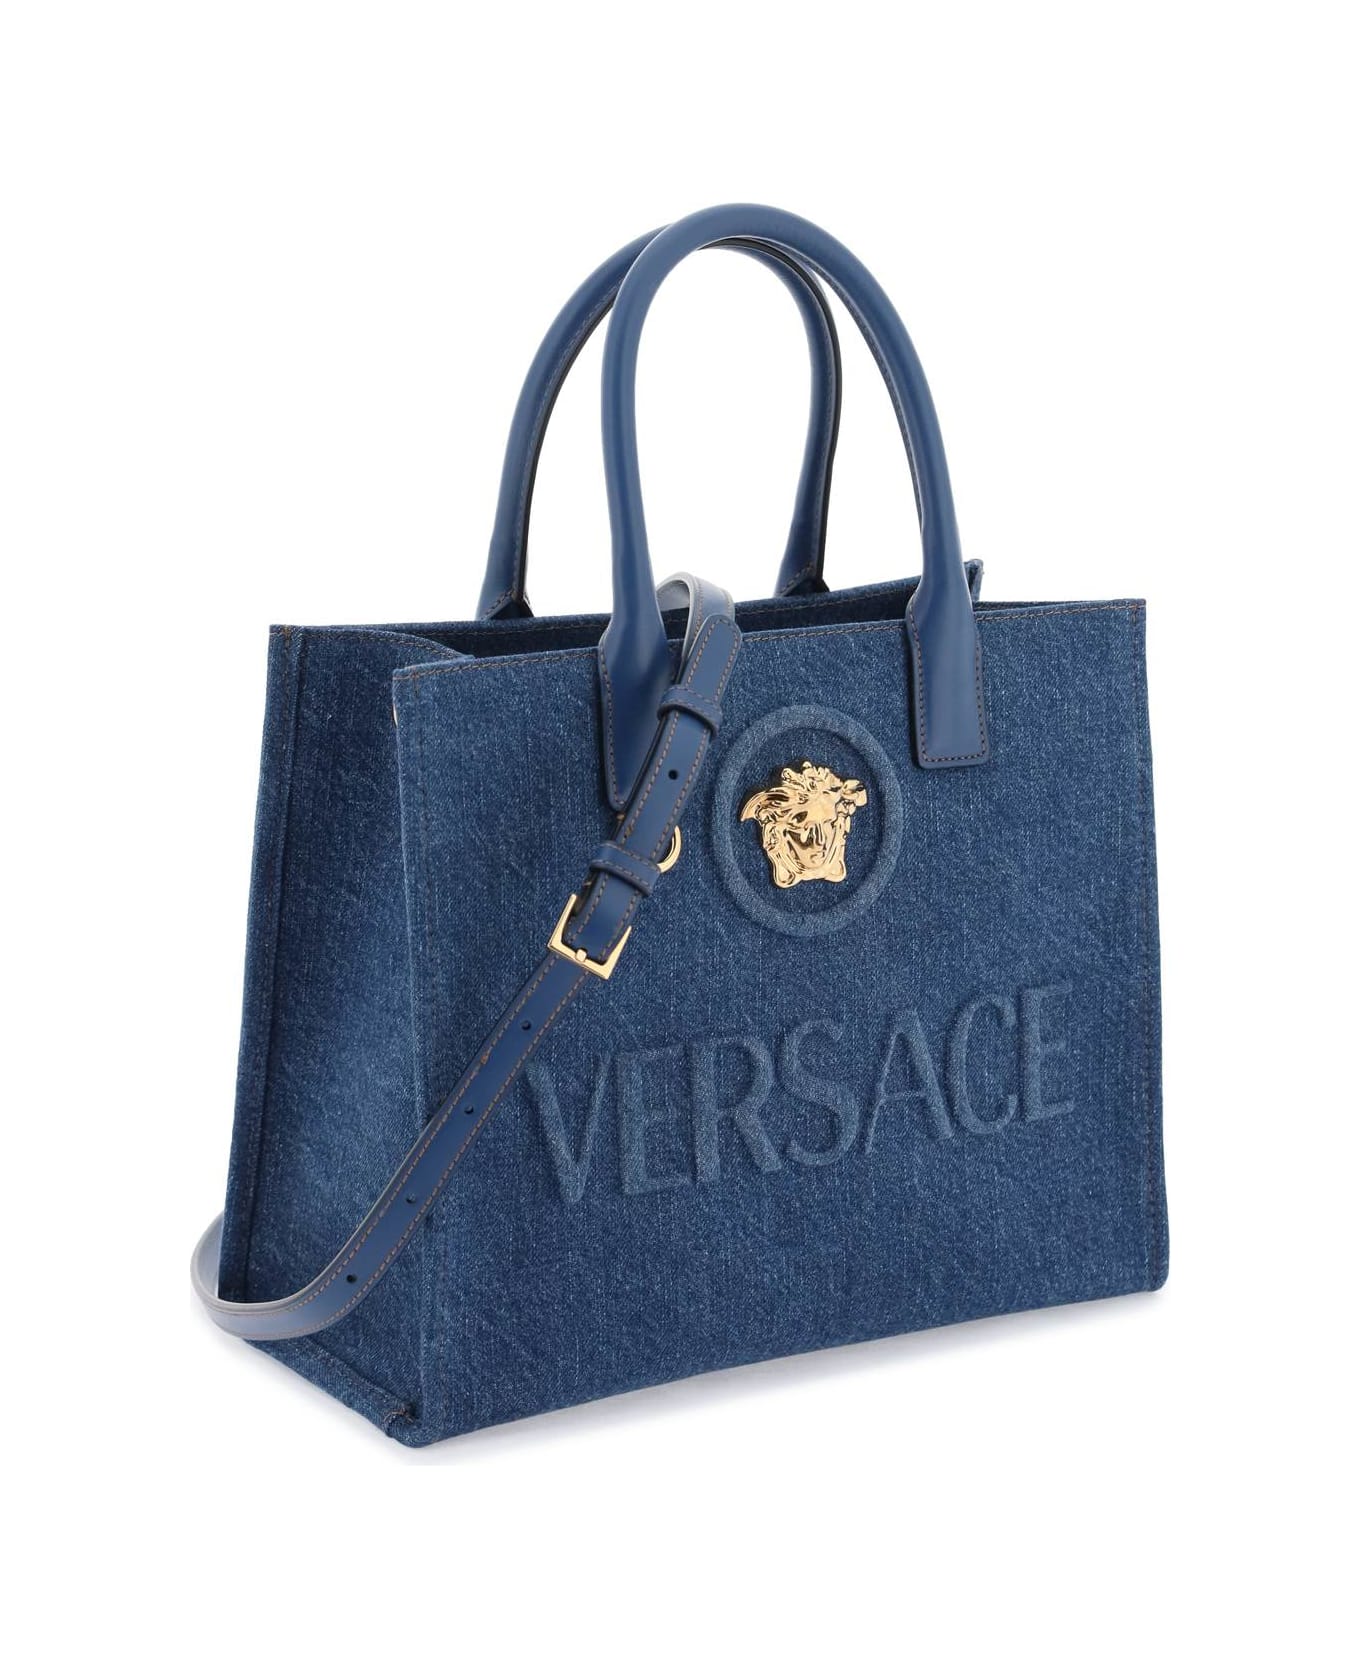 Versace Small 'la Medusa' Blue Cotton Shopper - NAVY BLUE VERSACE GOLD (Blue)